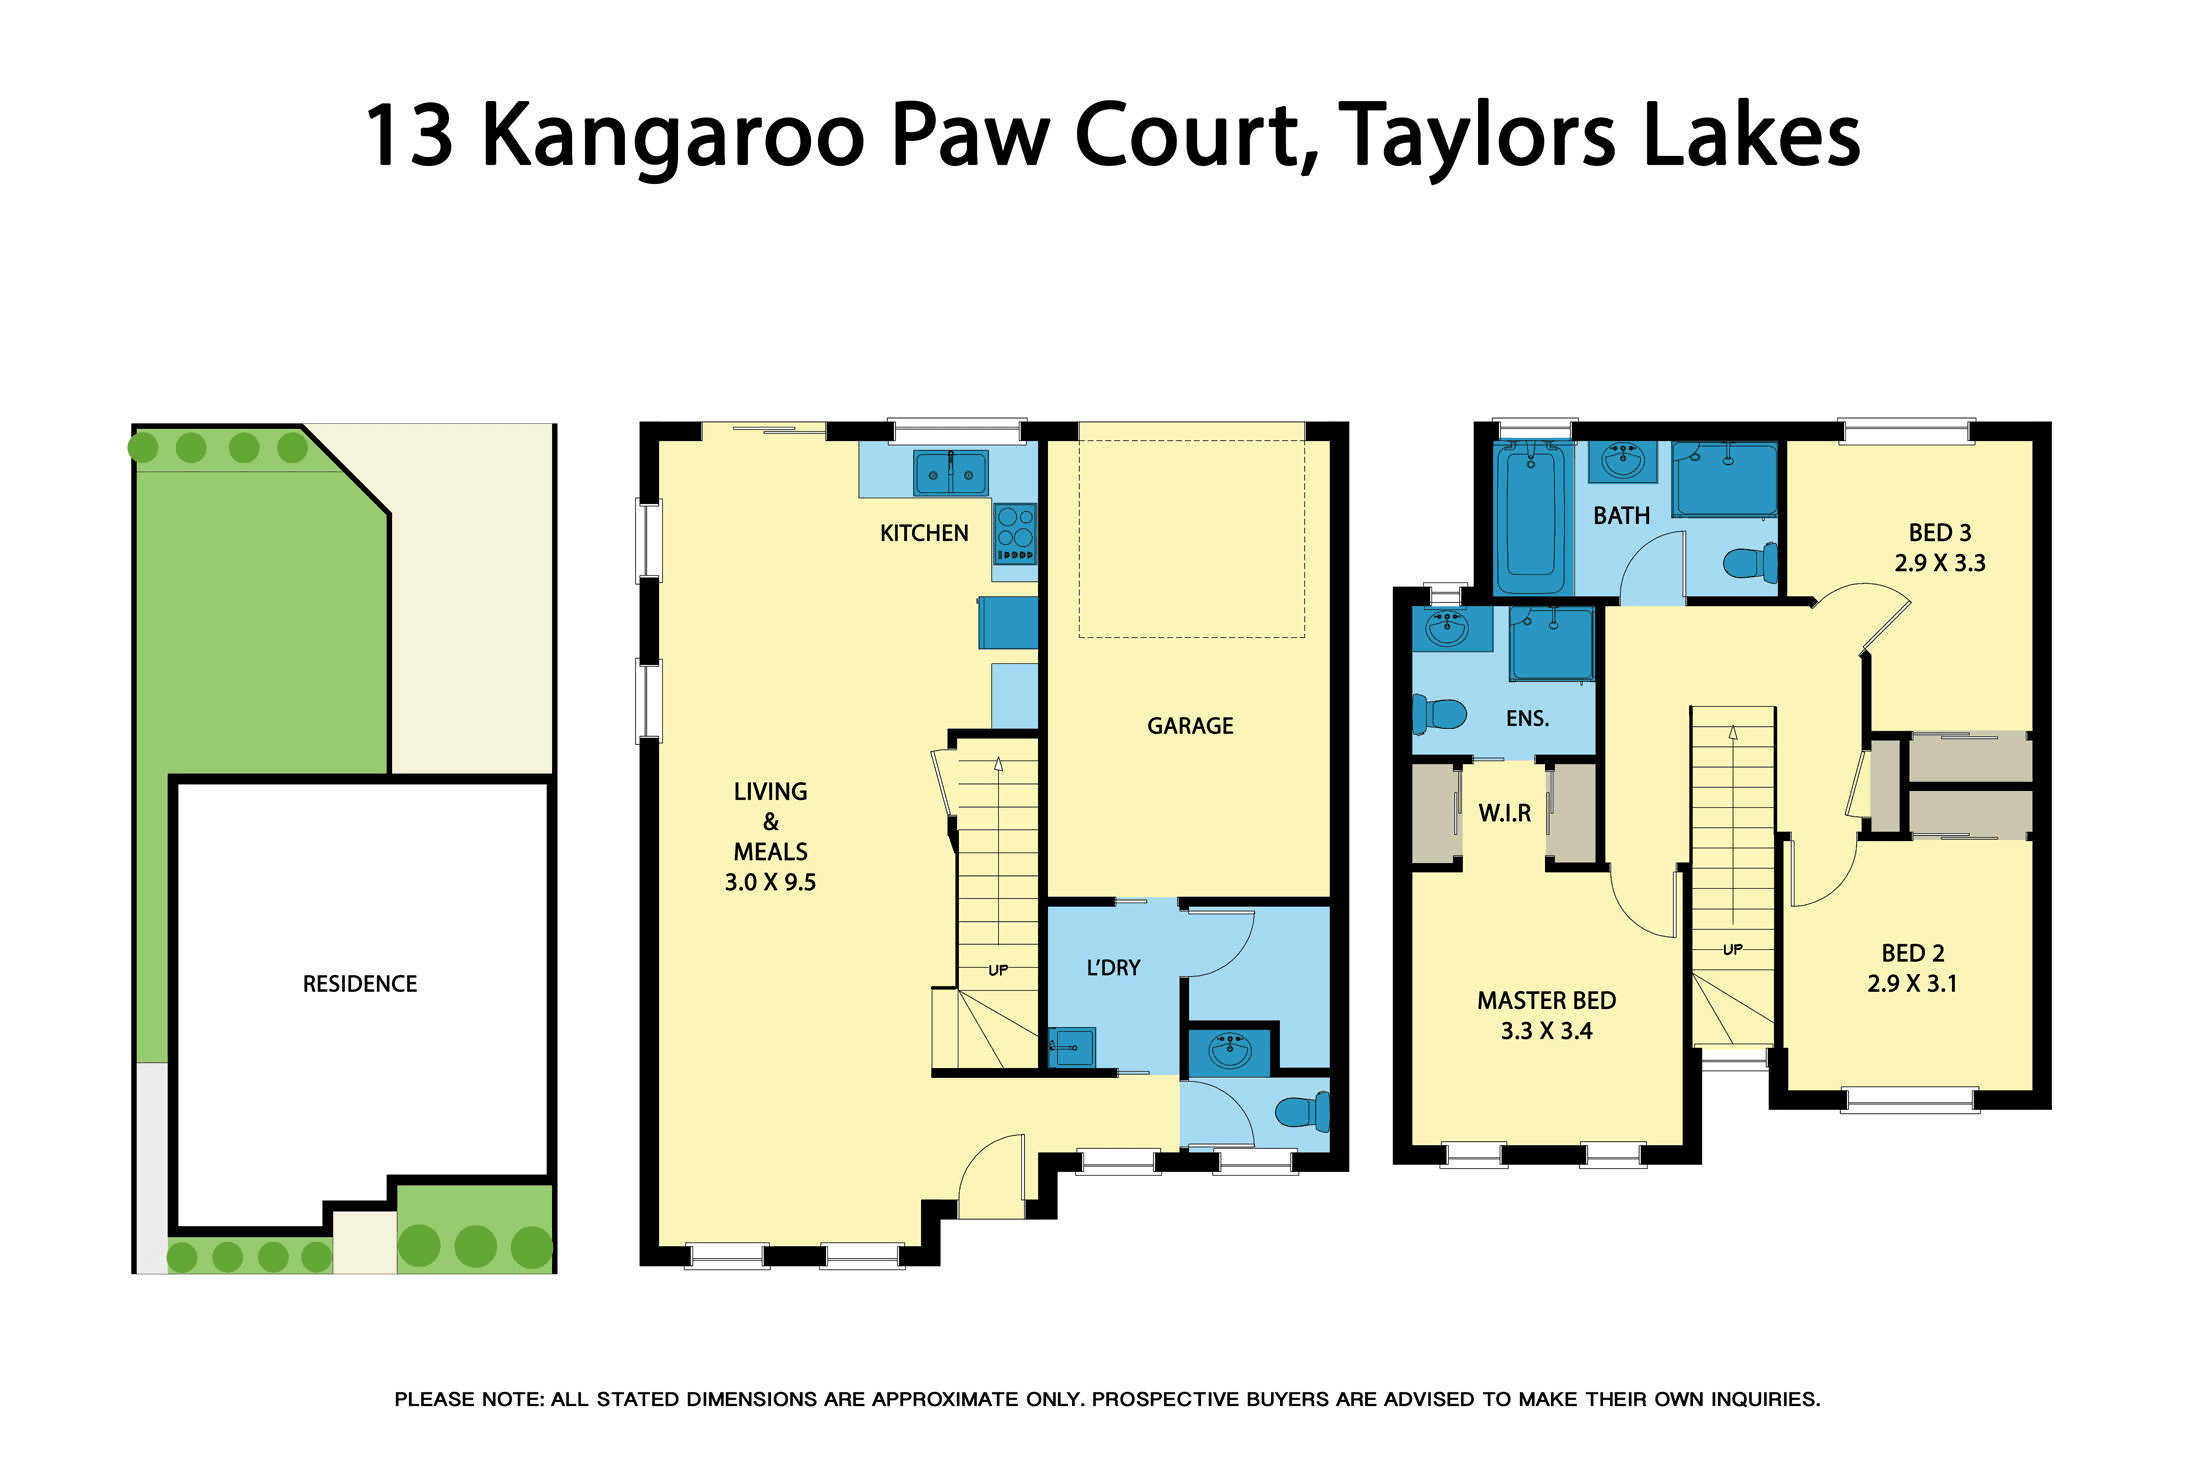 13 Kangaroo Paw Court, Taylors Lakes, VIC 3038